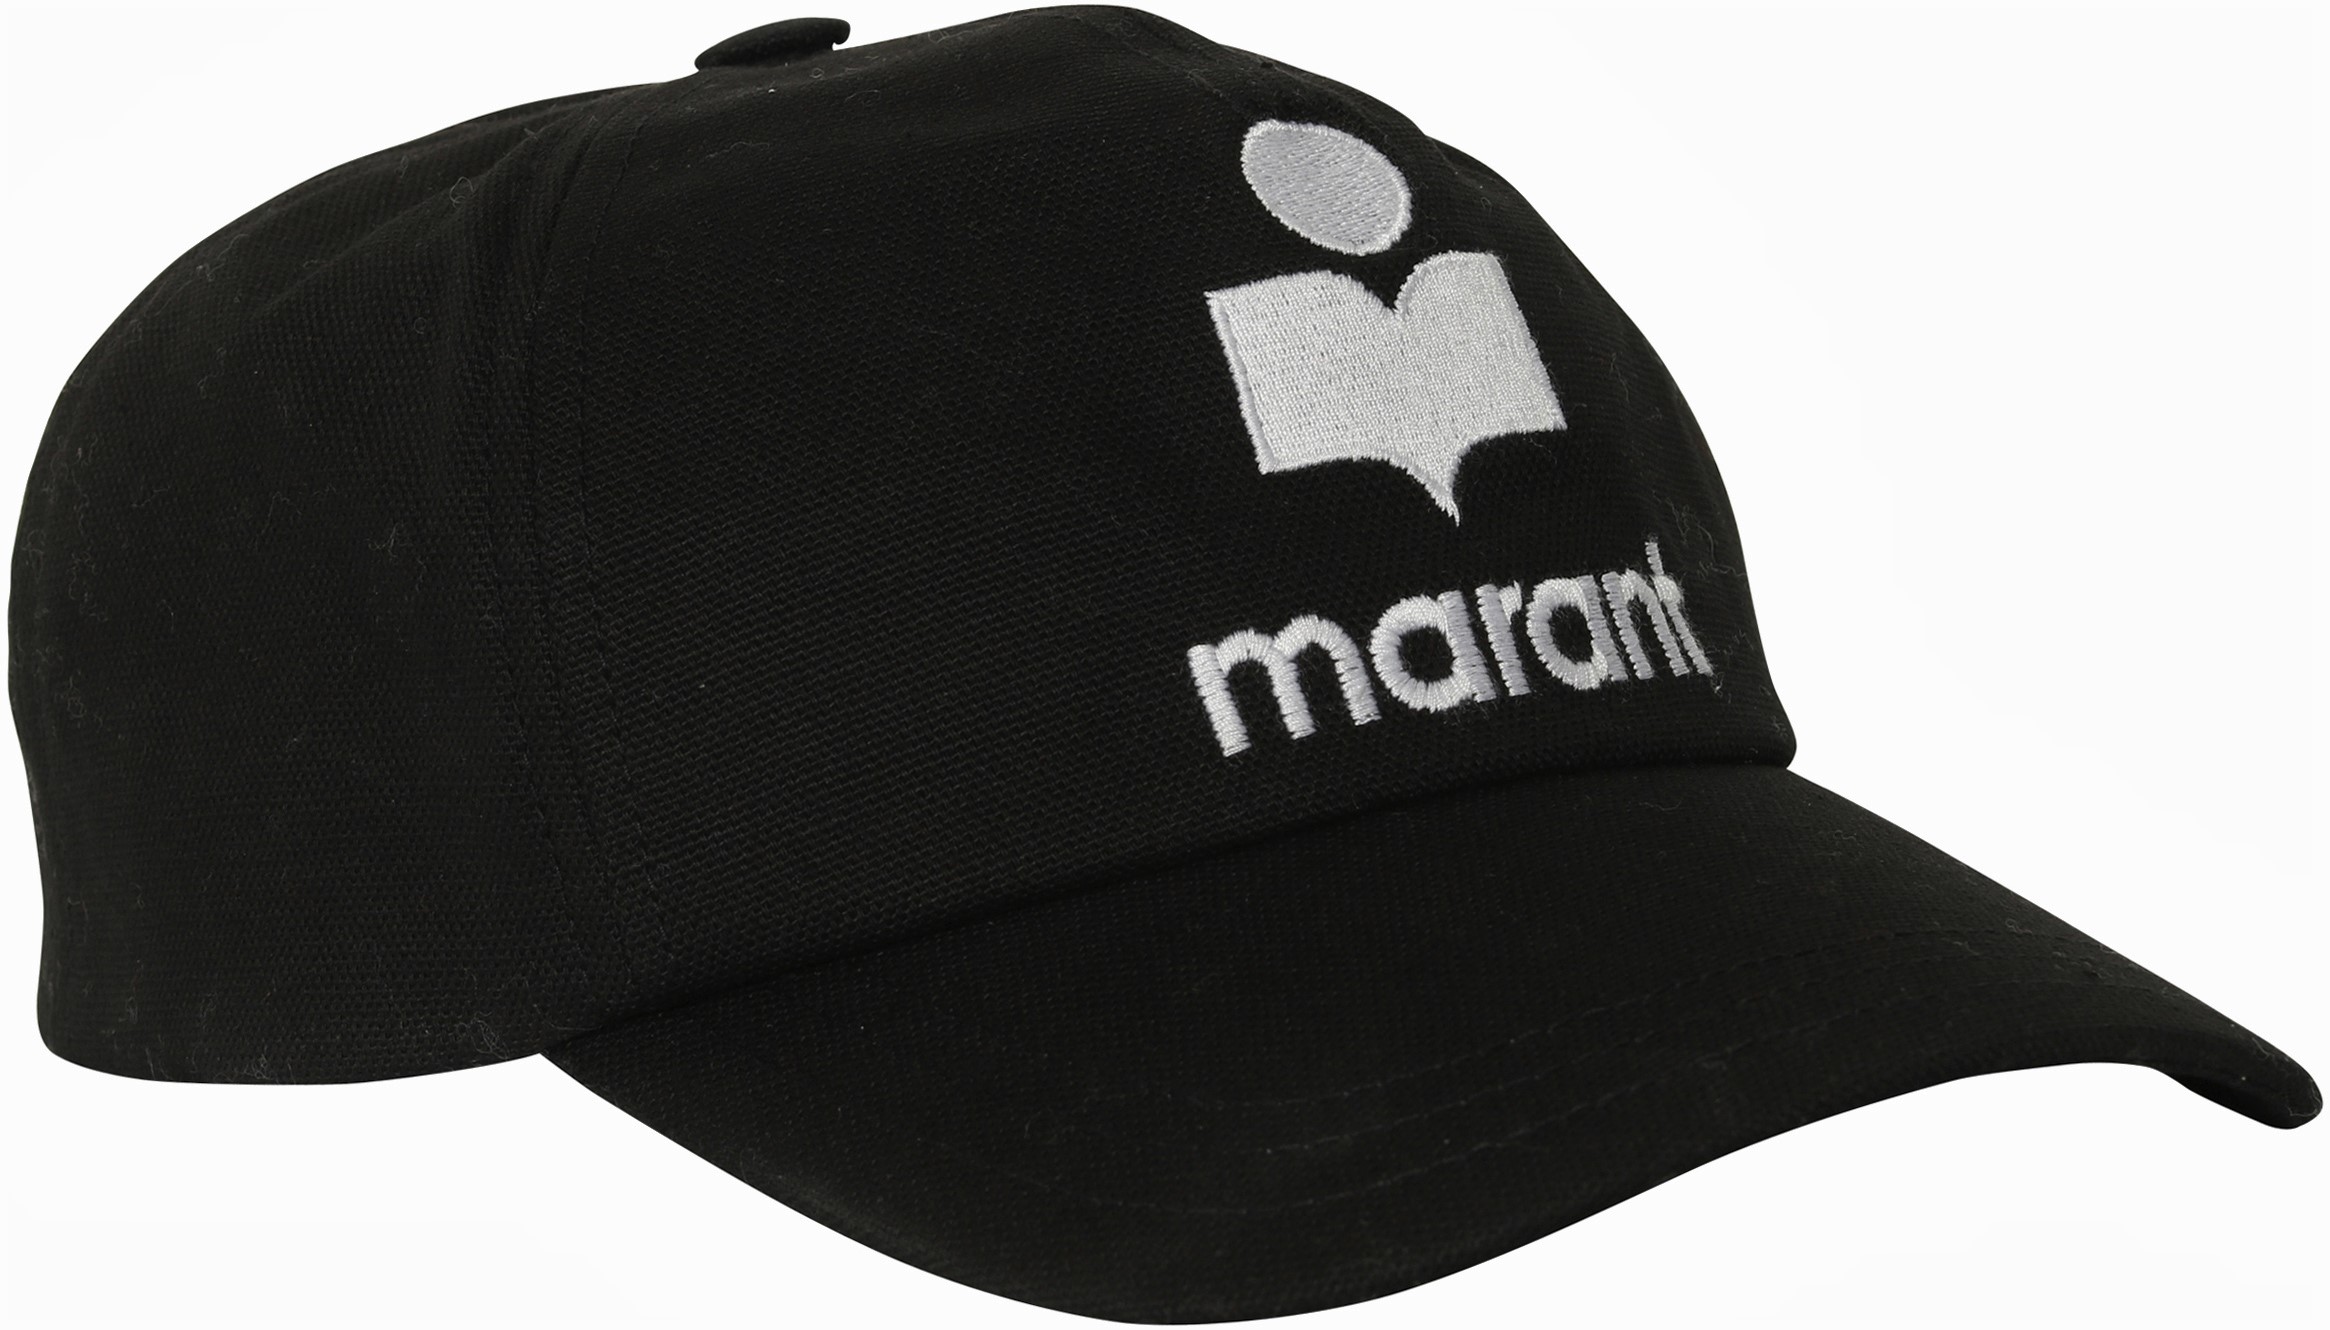 Isabel Marant Tyron Cap in Black/Ecru 59